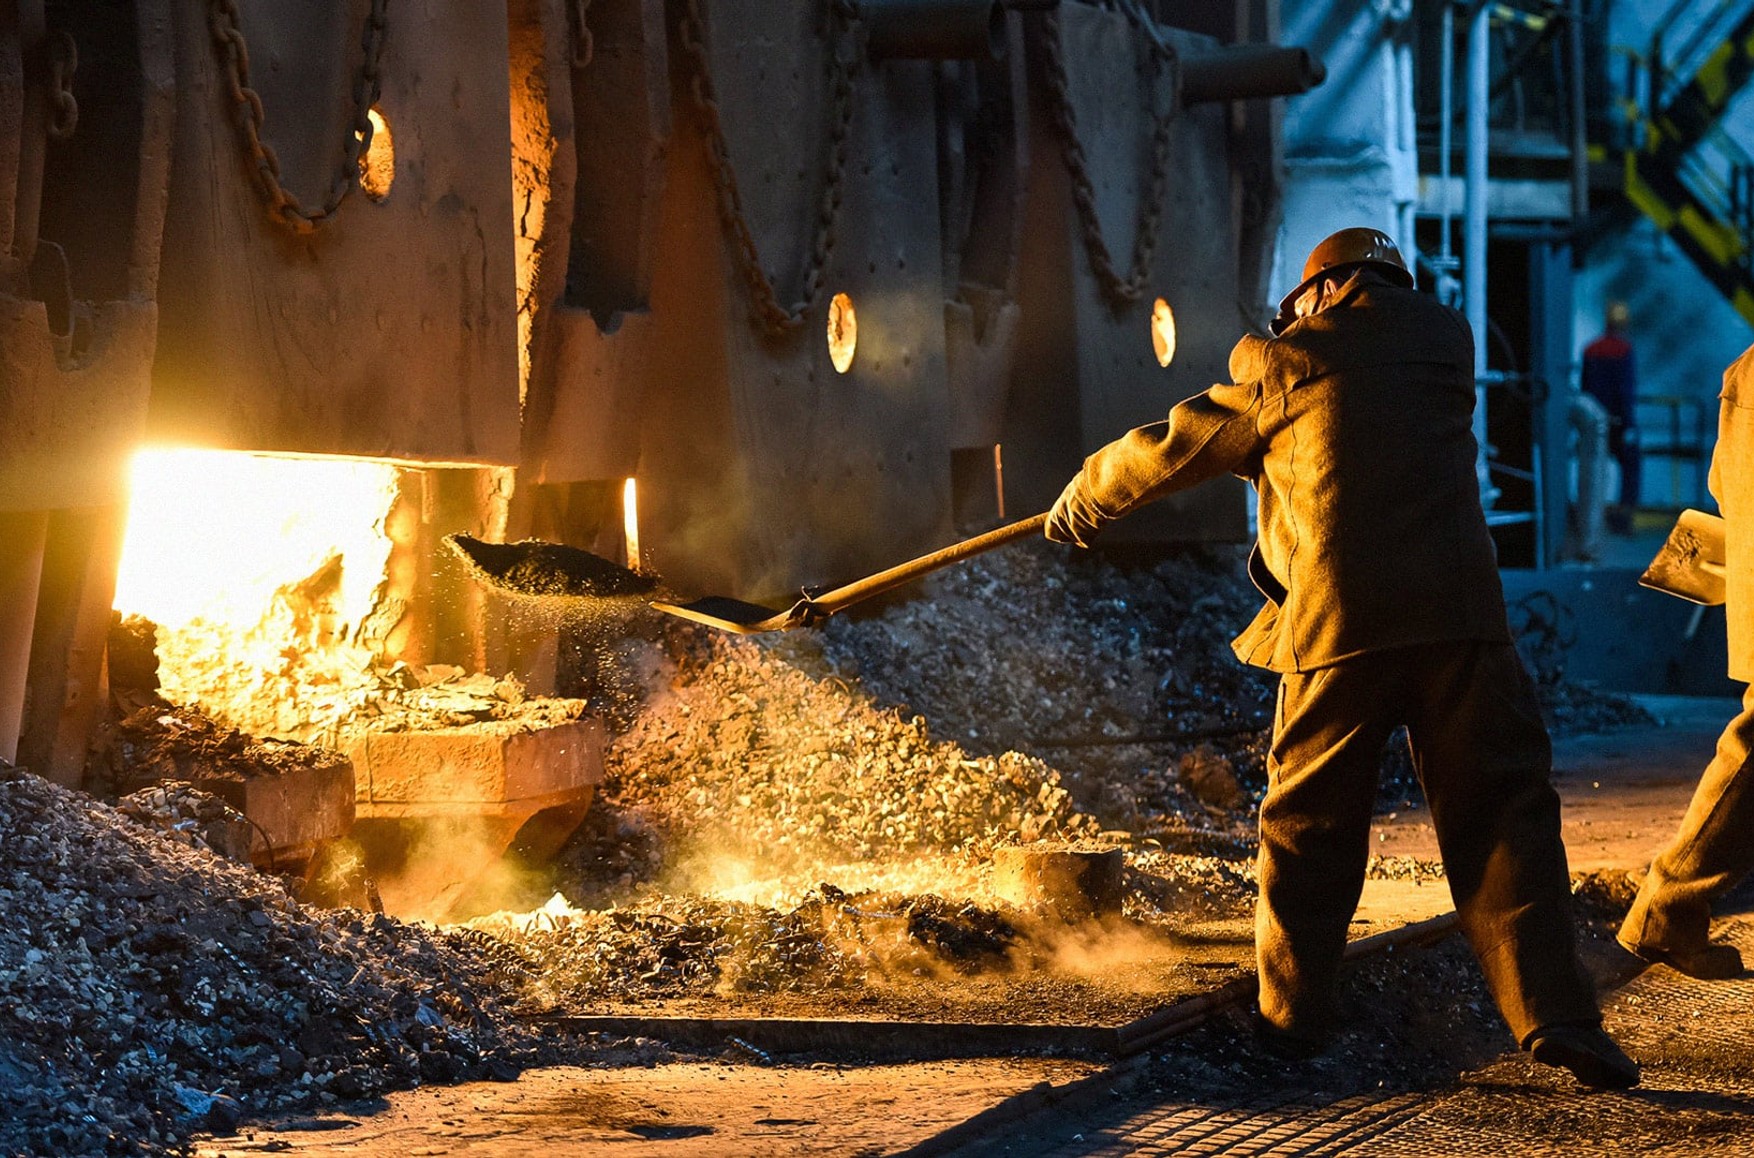 Бєлоусов заявив, що в 2020 році металурги отримали надприбутки і повинні повернути в бюджет 100 млрд рублів